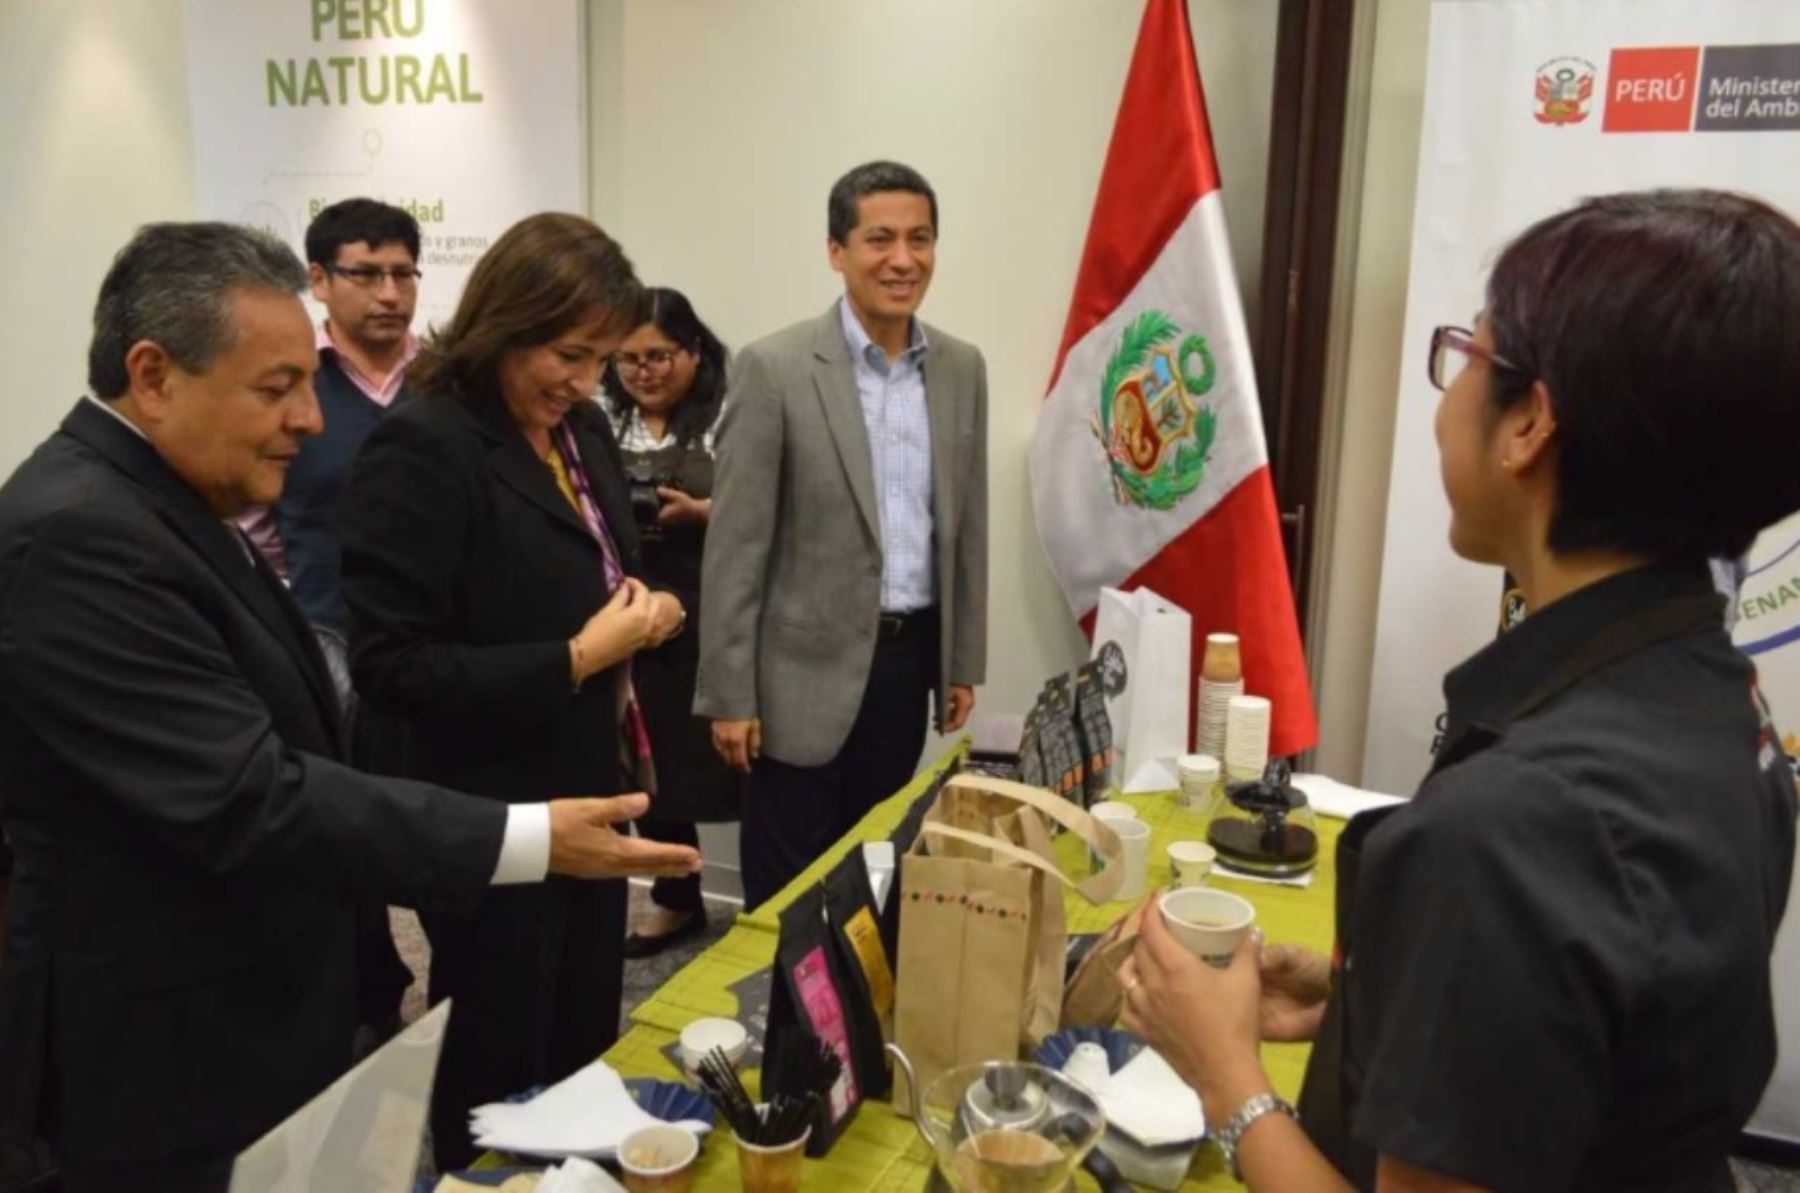 La campaña “Cafetea Perú” de Sierra y Selva Exportadora fue promovida en el Ministerio del Ambiente (Minam), donde la titular de dicha cartera, Elsa Galarza, destacó esta iniciativa que busca incrementar a nivel nacional el consumo de café tostado peruano.